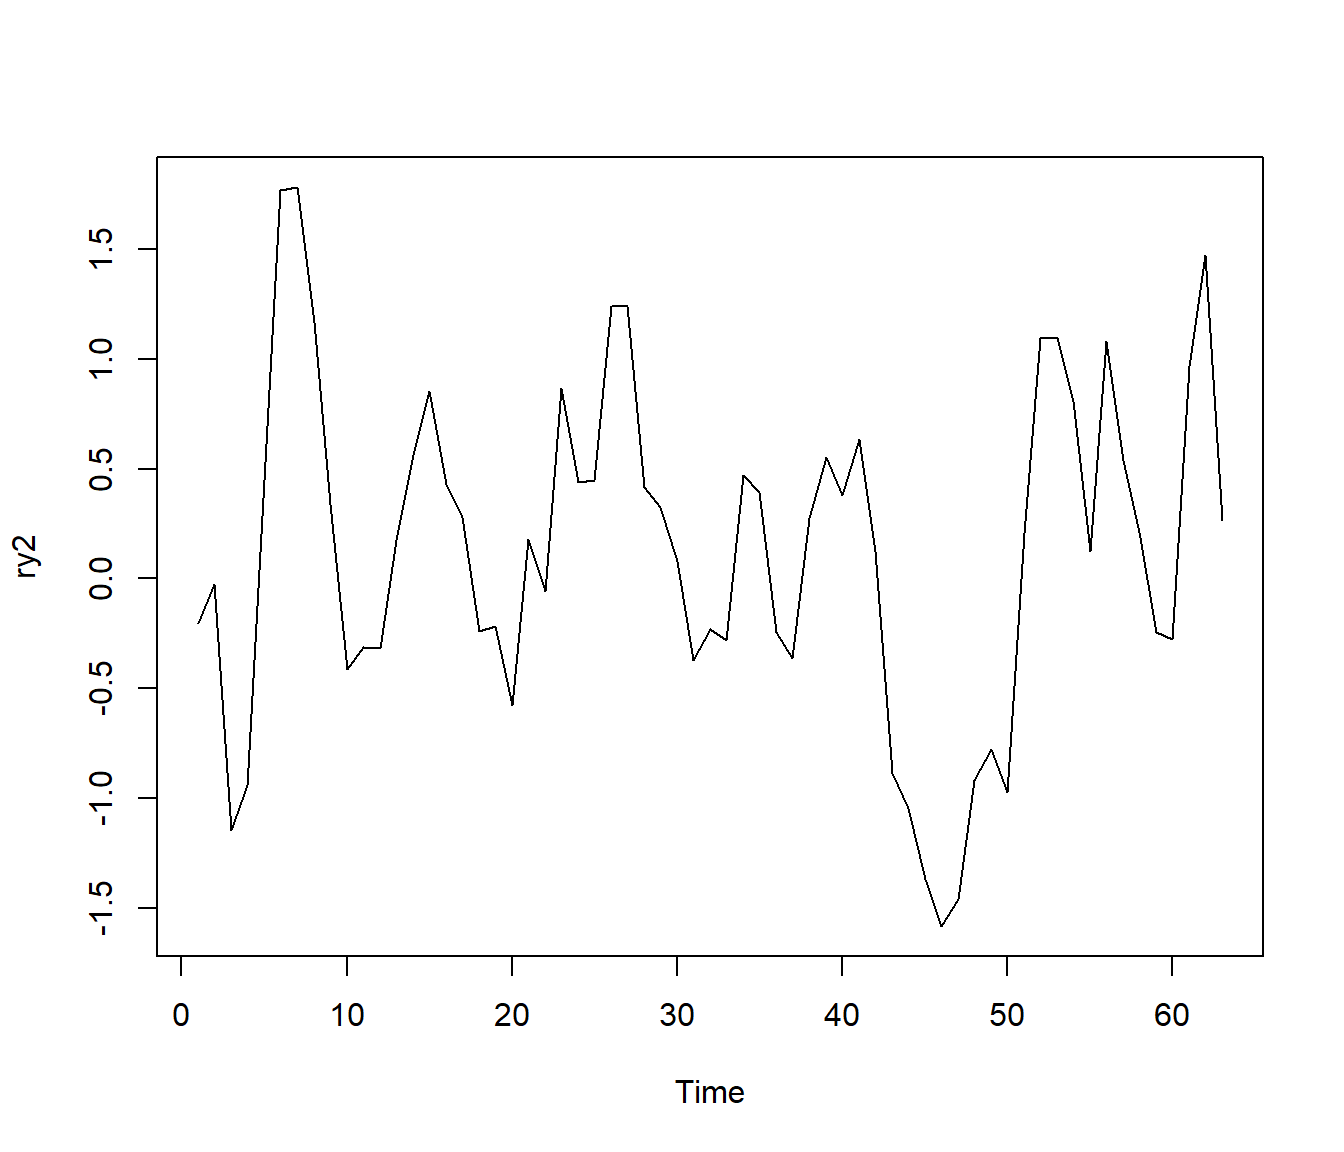 Simulación de un modelo autoregresivo con errores con distribución *t* de Student.